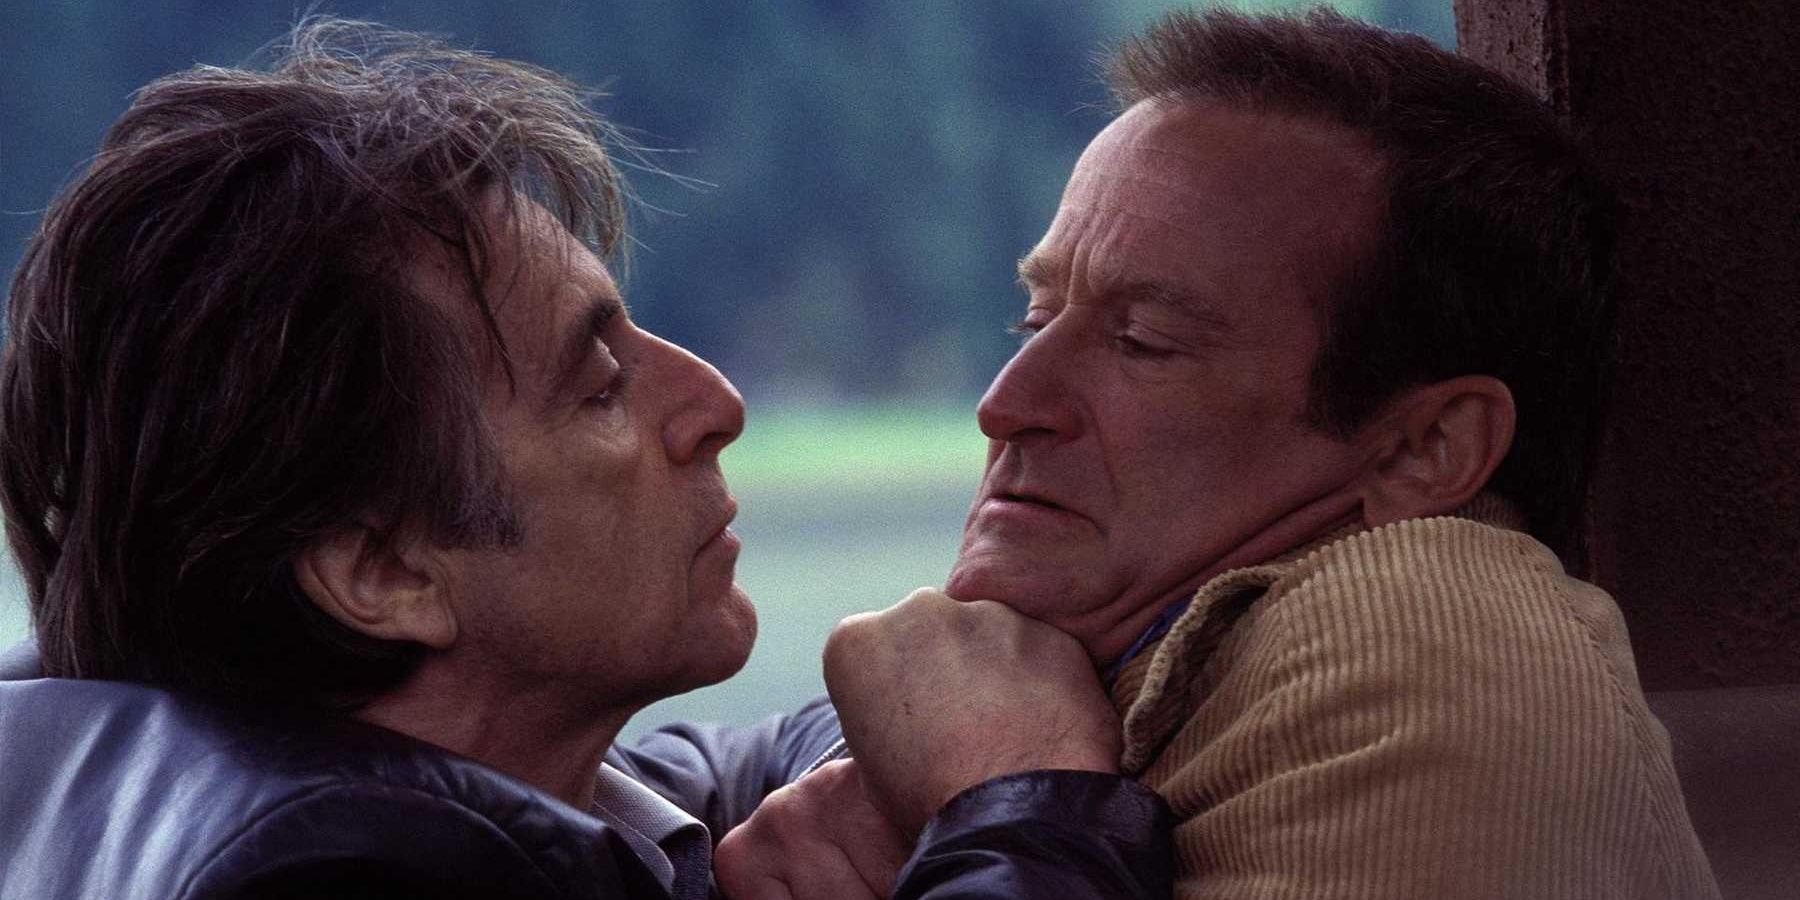 Al Pacino confronts Robin Williams in Insomnia